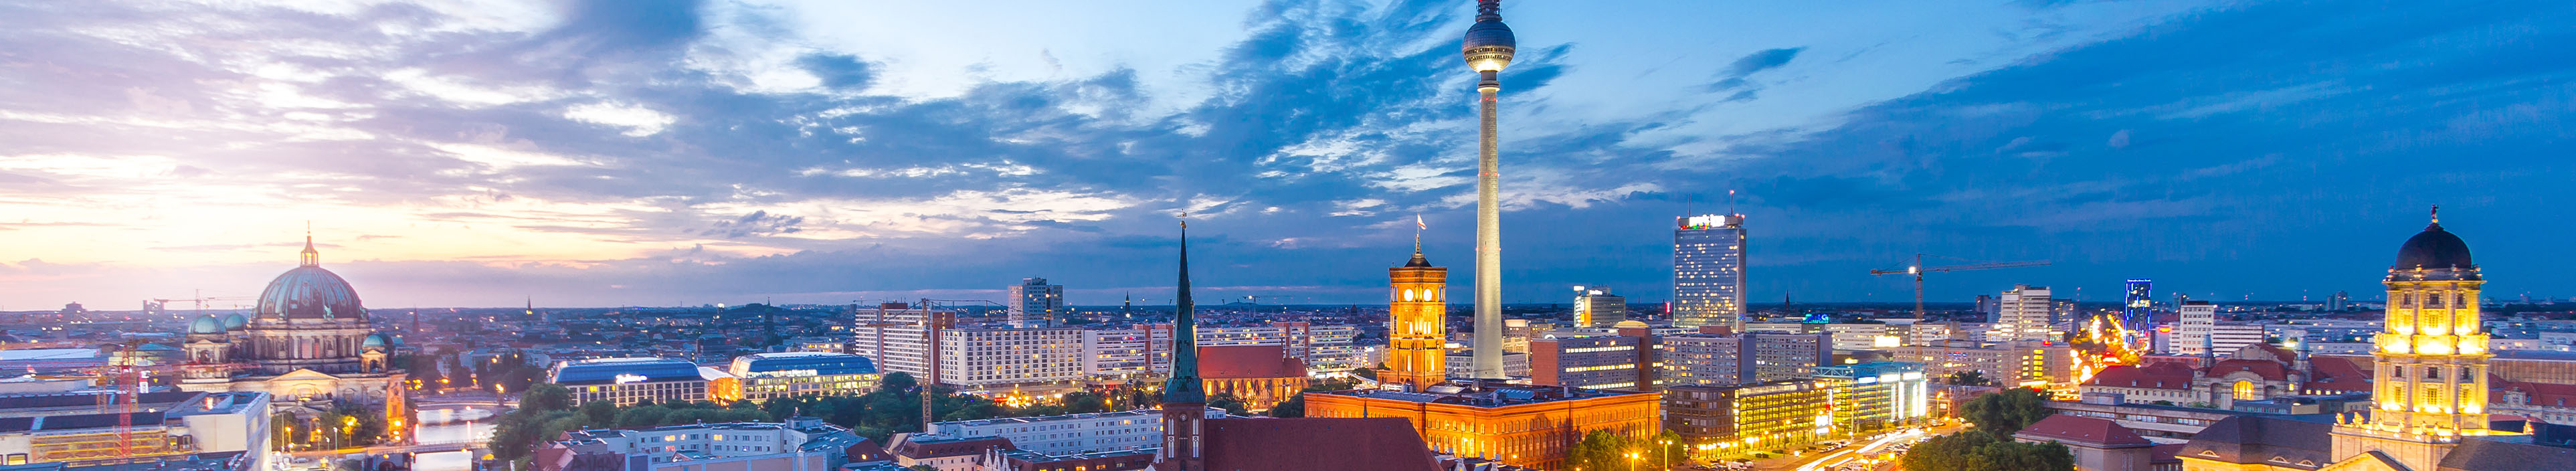 Blick auf die Skyline von Berlin mit Fernsehturm